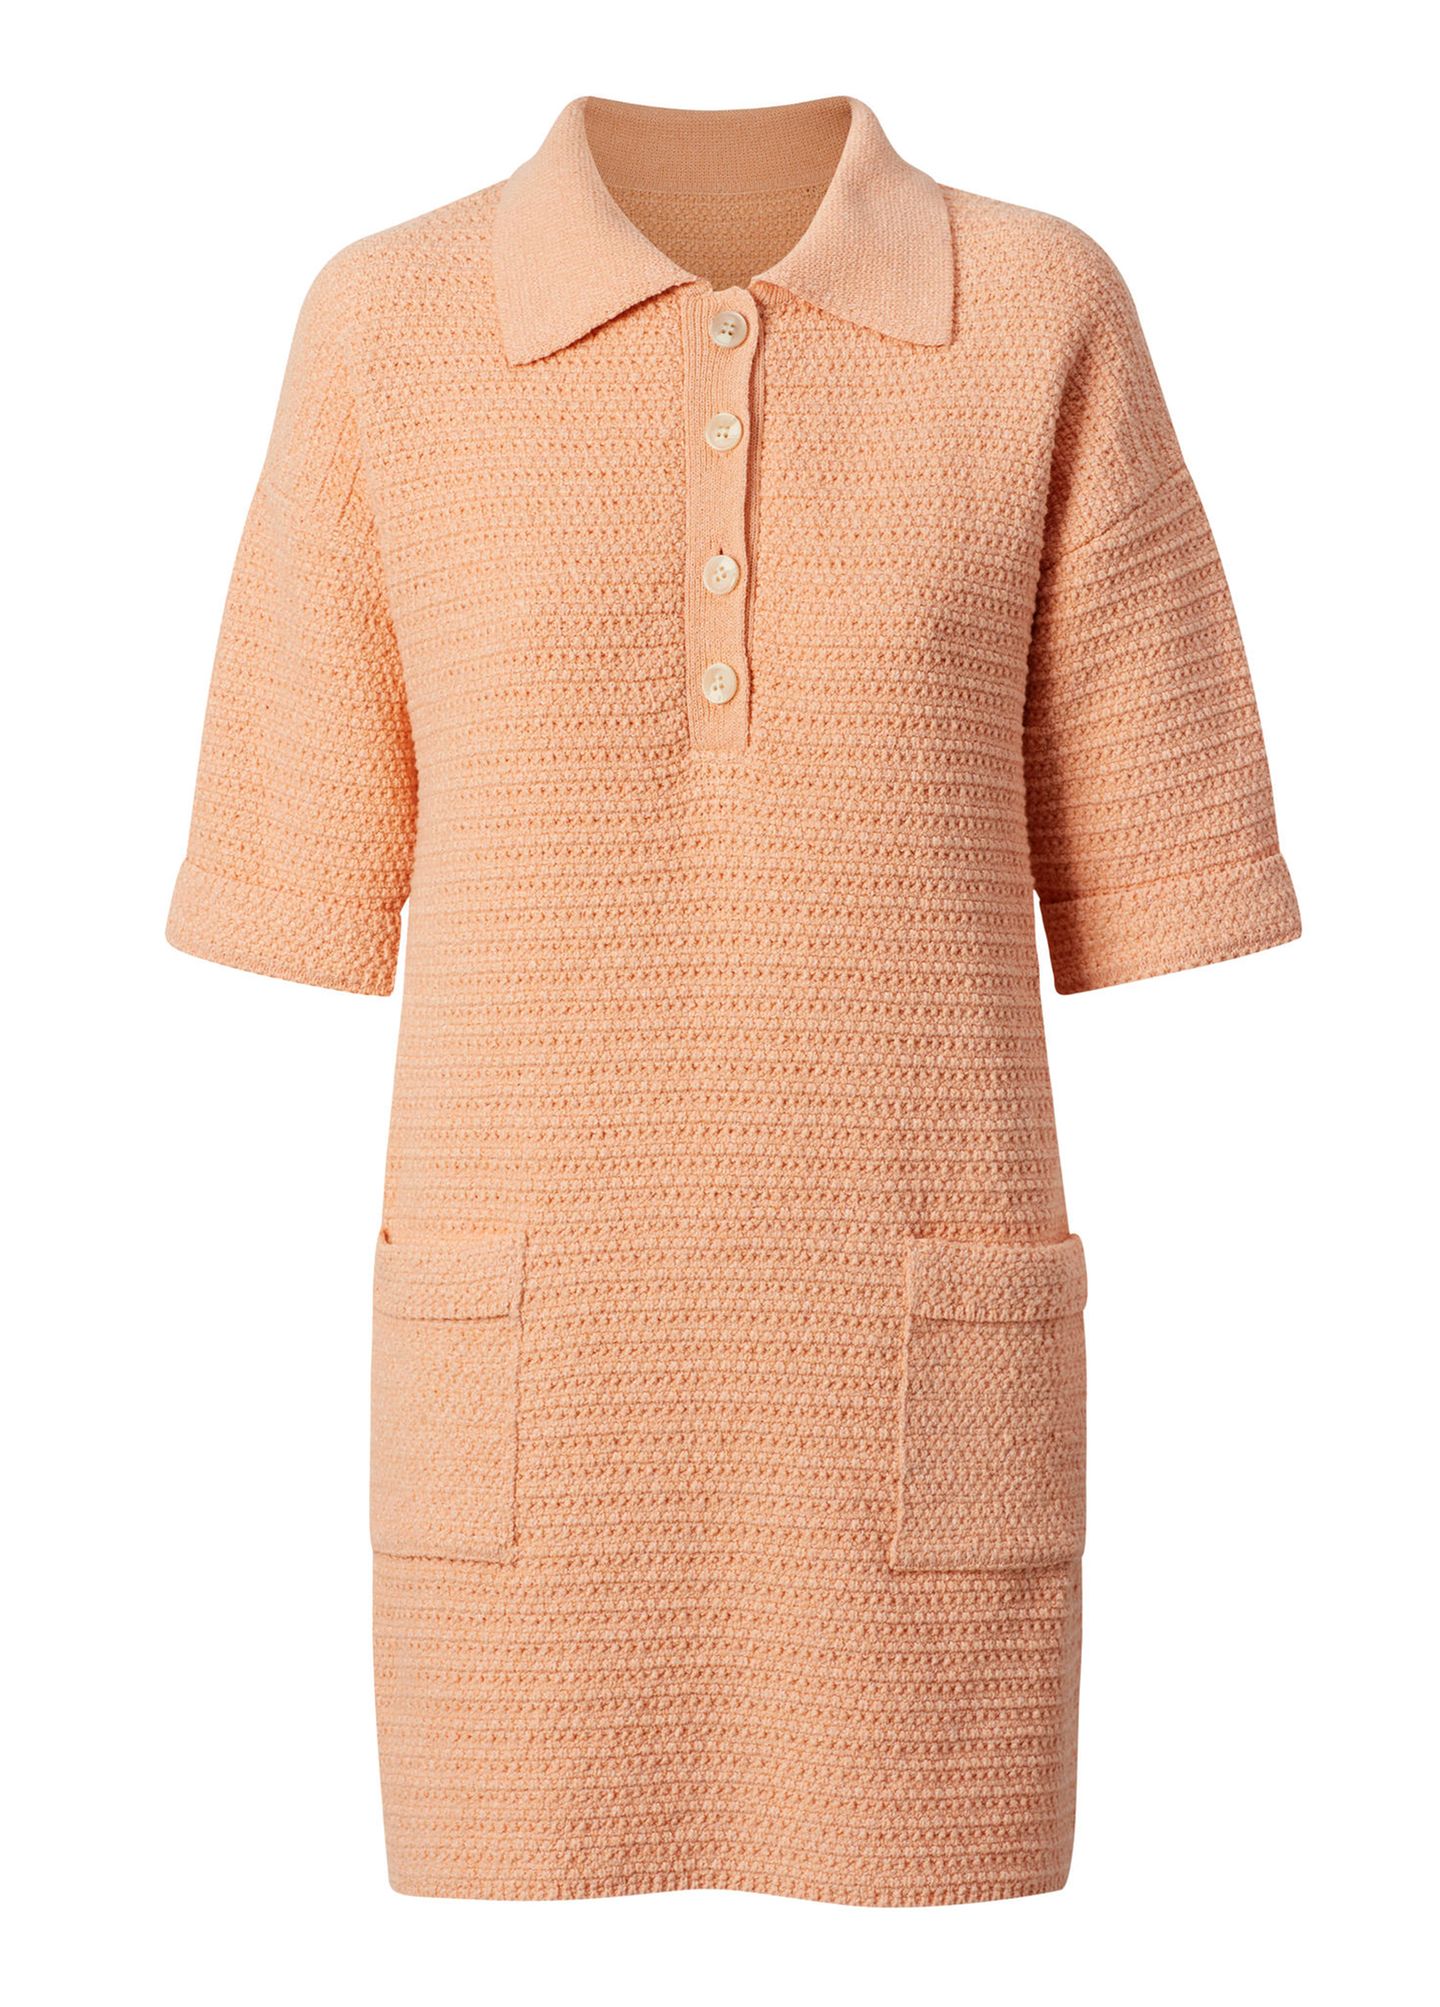 Dürfen wir vorstellen? Das perfekte Frühlingskleid. Nicht nur die stylishe Farbe, sondern auch der angesagte Polo-Kragen macht das Kleid zum absoluten Hingucker. Von Mango, um die 60 Euro.